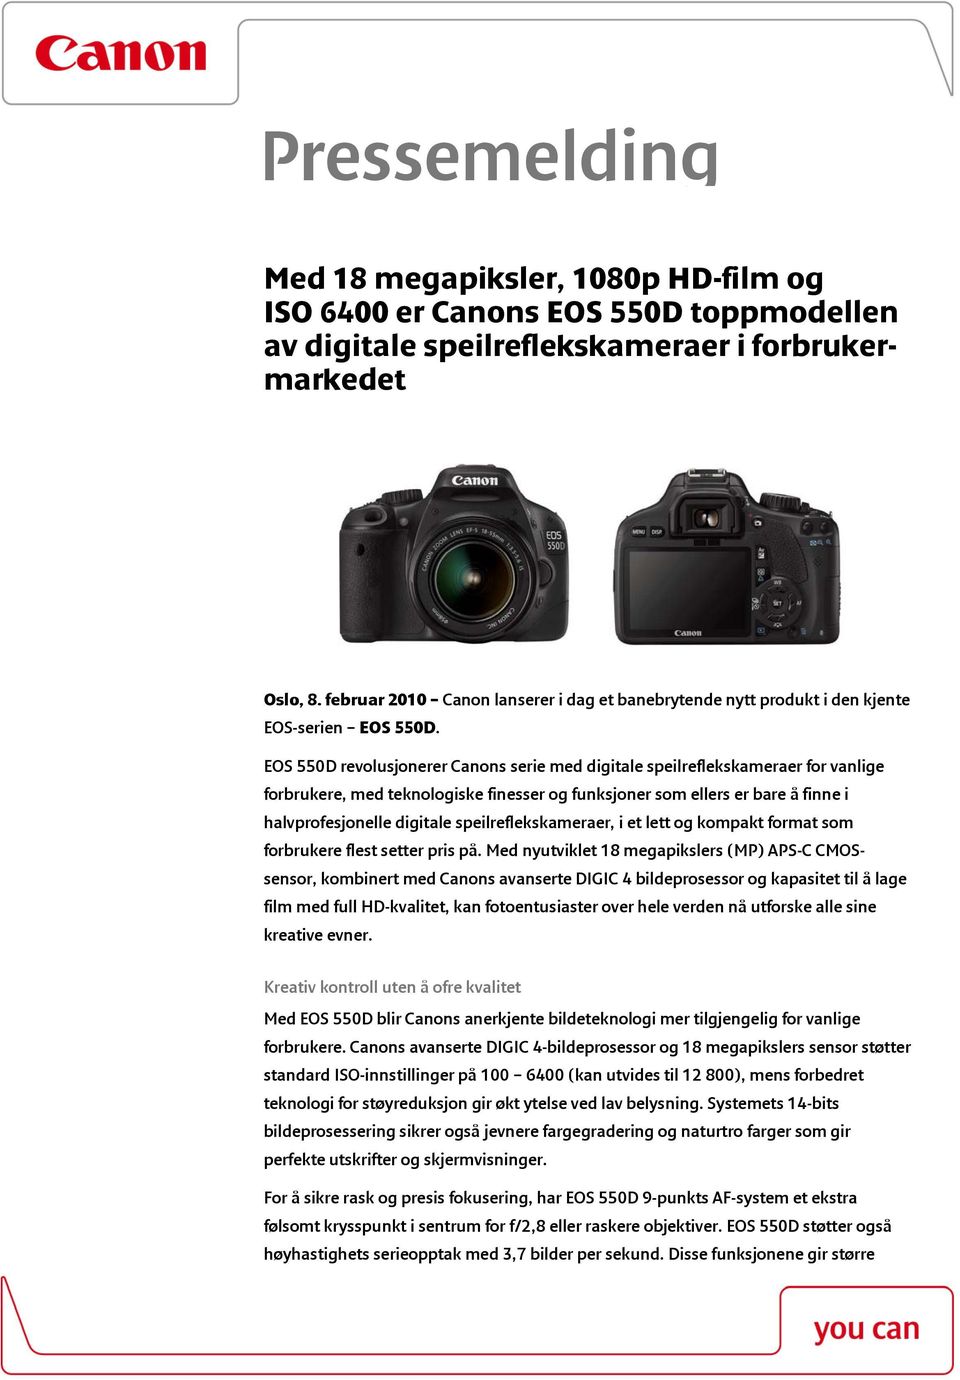 EOS 550D revolusjonerer Canons serie med digitale speilreflekskameraer for vanlige forbrukere, med teknologiske finesser og funksjoner som ellers er bare å finne i halvprofesjonelle digitale